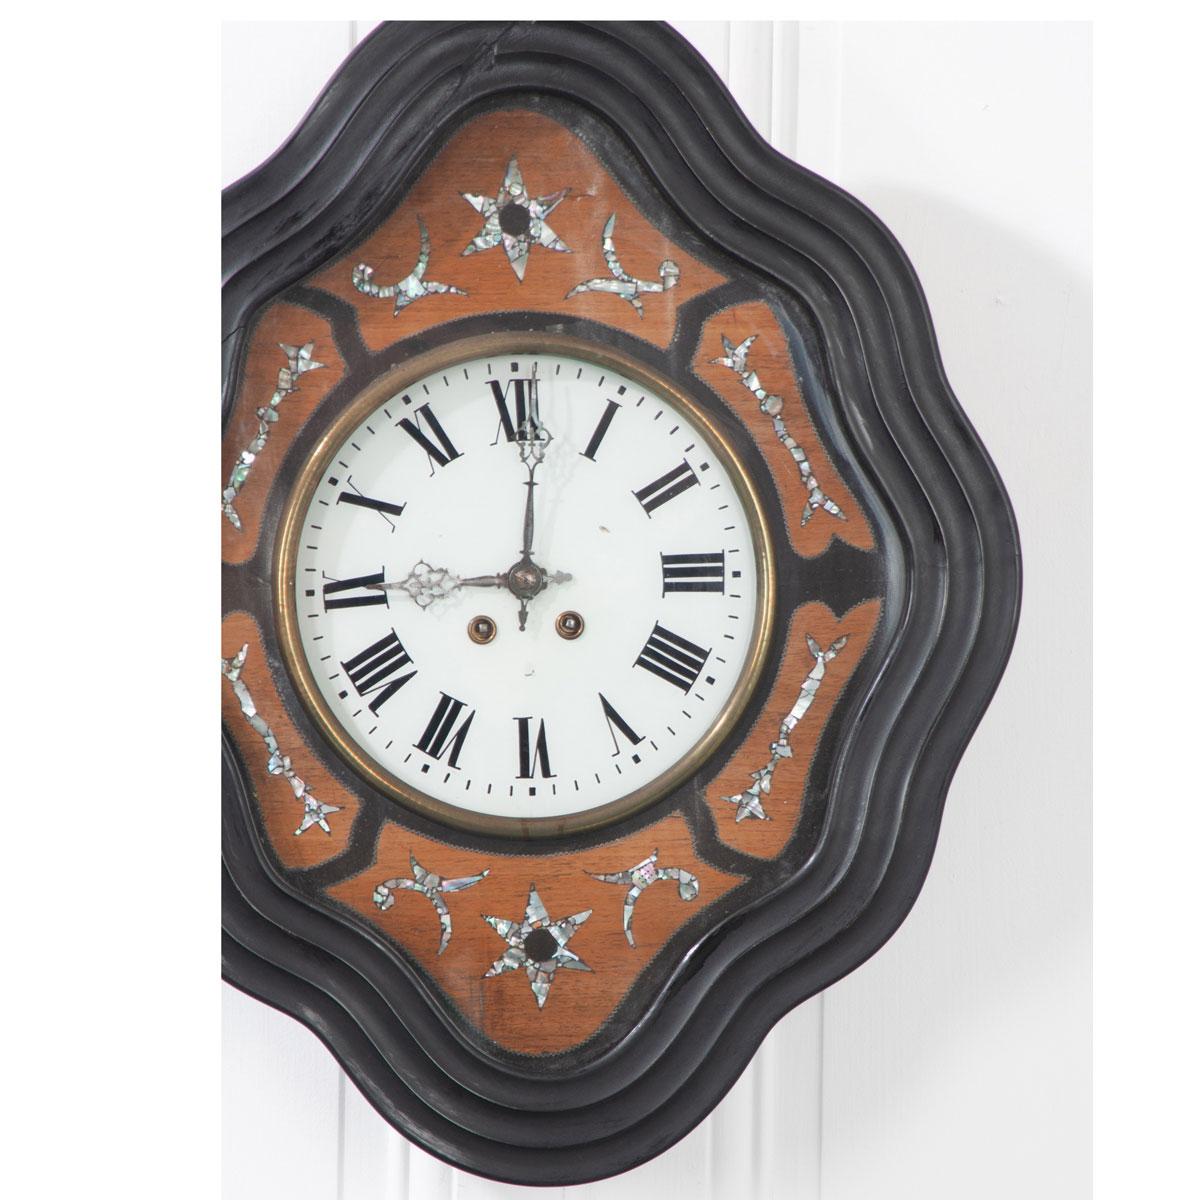 Eine atemberaubende Wanduhr aus dem 19. Jahrhundert, rautenförmig, mit gewelltem Uhrenrahmen aus ebenholzfarbenem Holz. Astrale und filigrane Perlmuttmuster sind in unterschiedlich gebeiztem Mahagoni und glänzendem Perlmutt eingelegt und umgeben das